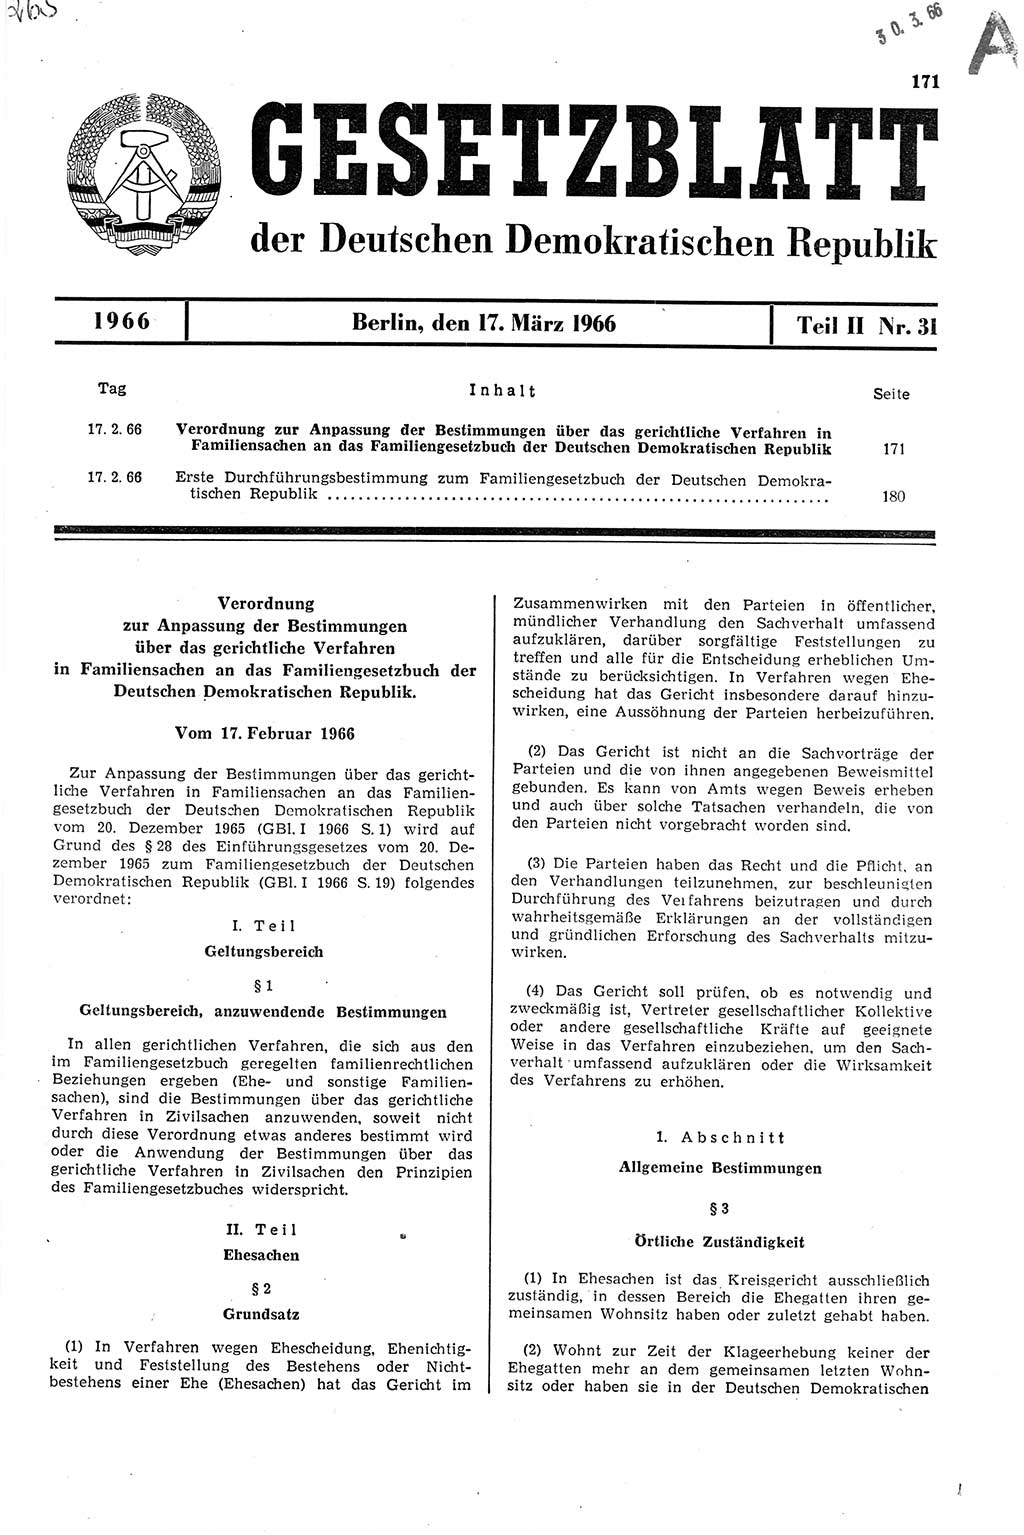 Gesetzblatt (GBl.) der Deutschen Demokratischen Republik (DDR) Teil ⅠⅠ 1966, Seite 171 (GBl. DDR ⅠⅠ 1966, S. 171)